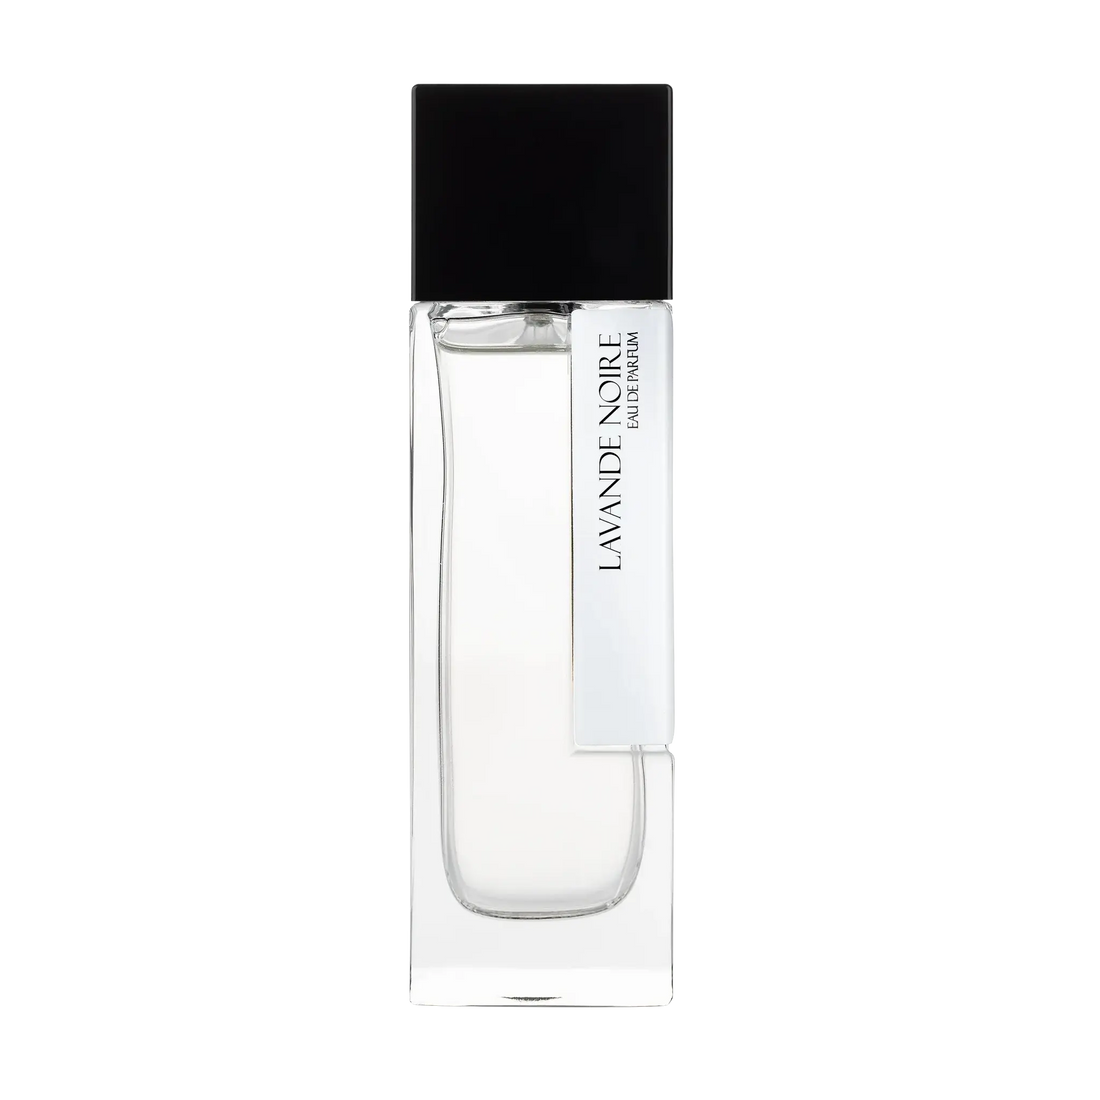 Laurent Mazzone Lavande Noir Eau de parfum - 100 ml